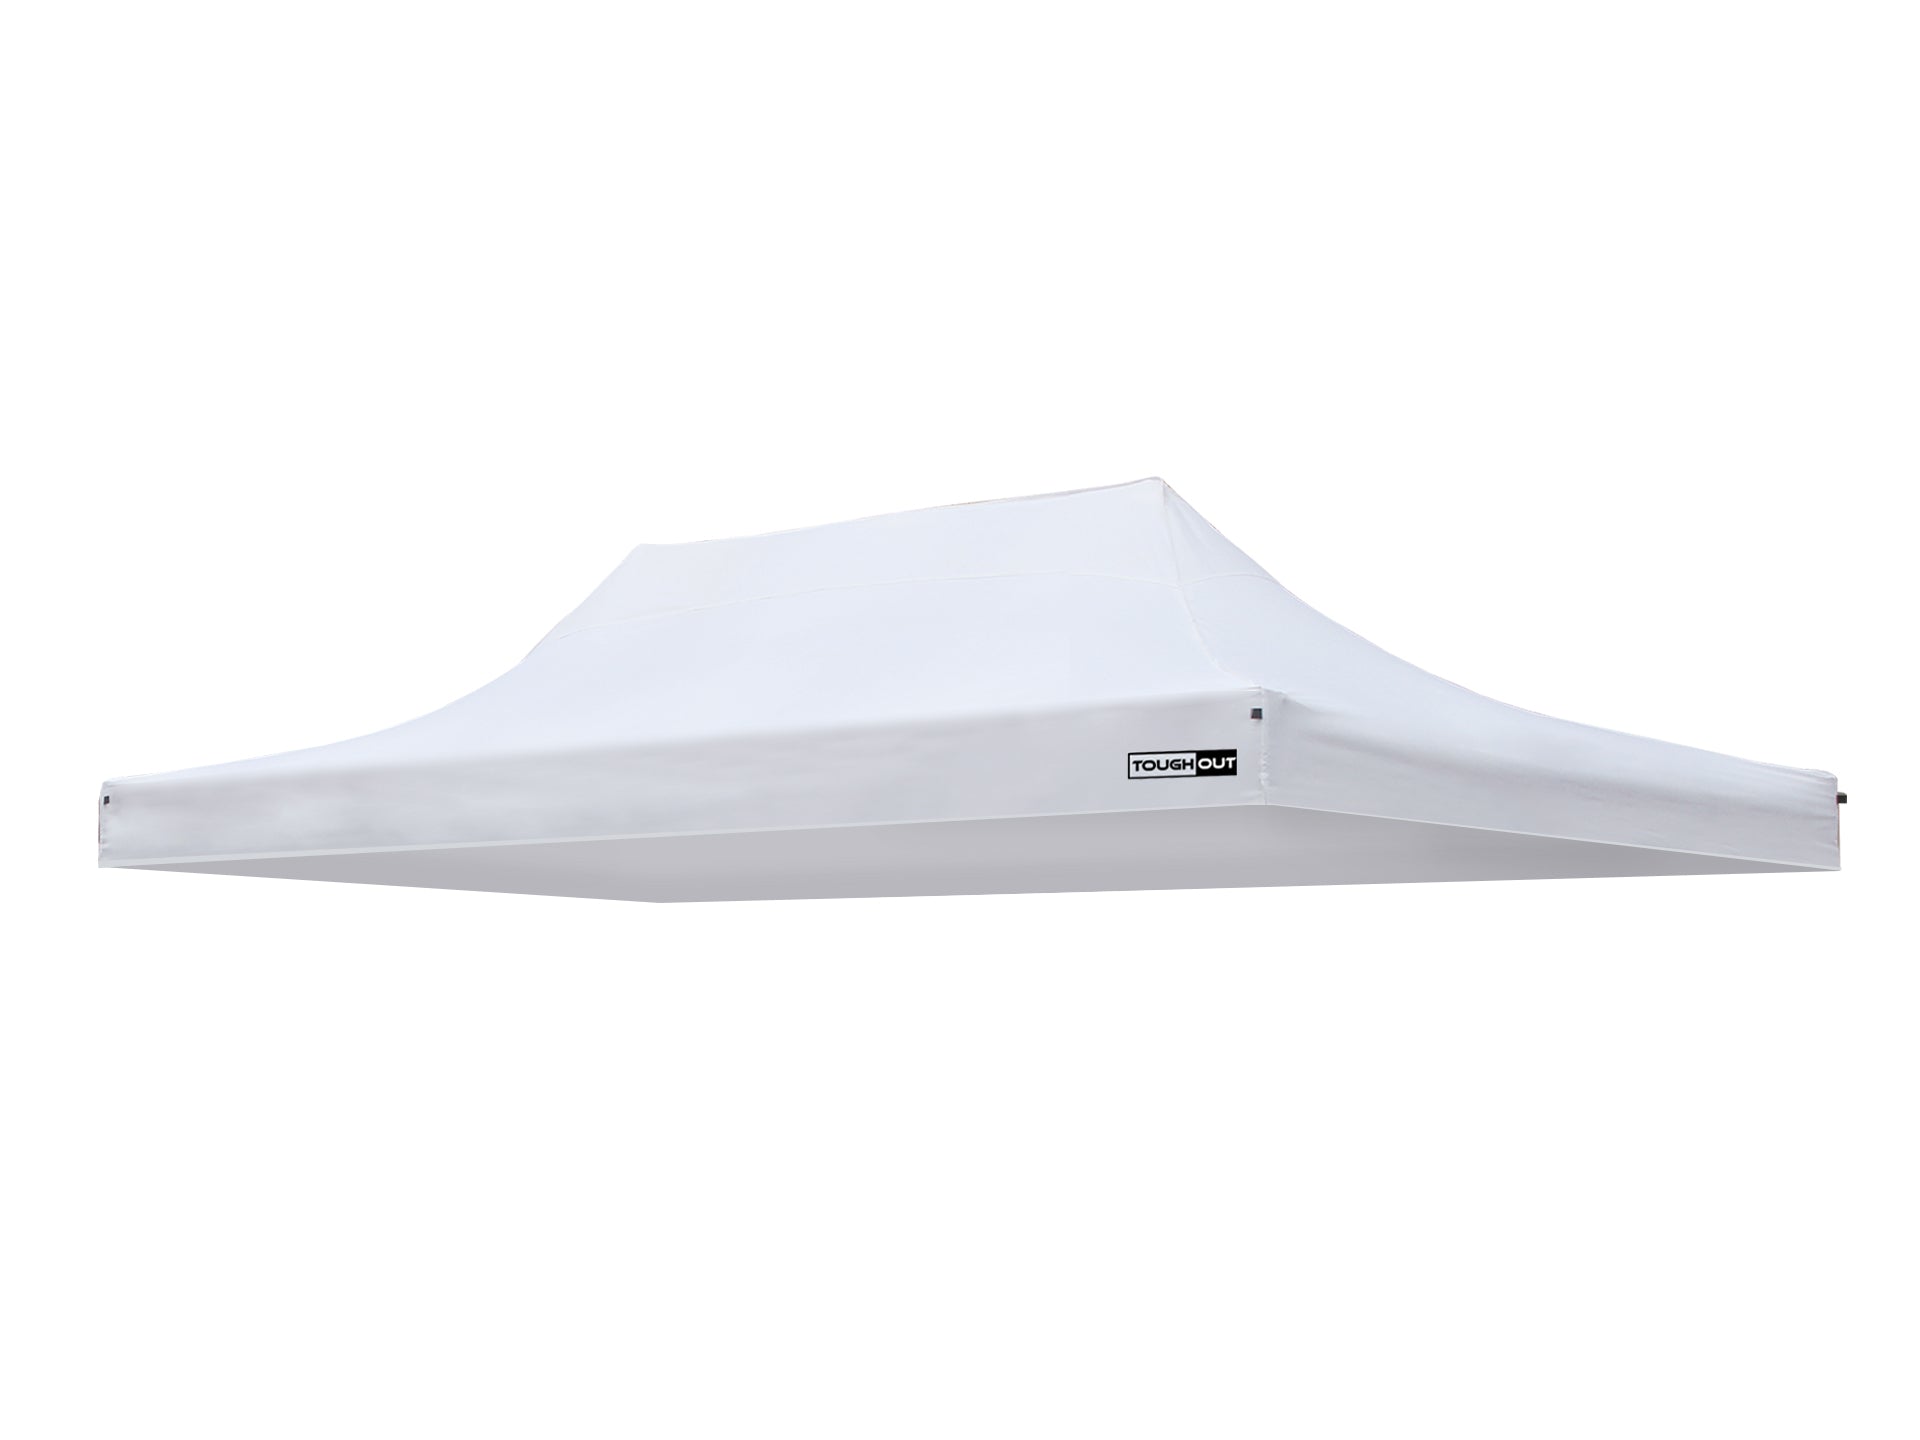 TOUGHOUT Breeze Gazebo Canopy 3x4.5M- White